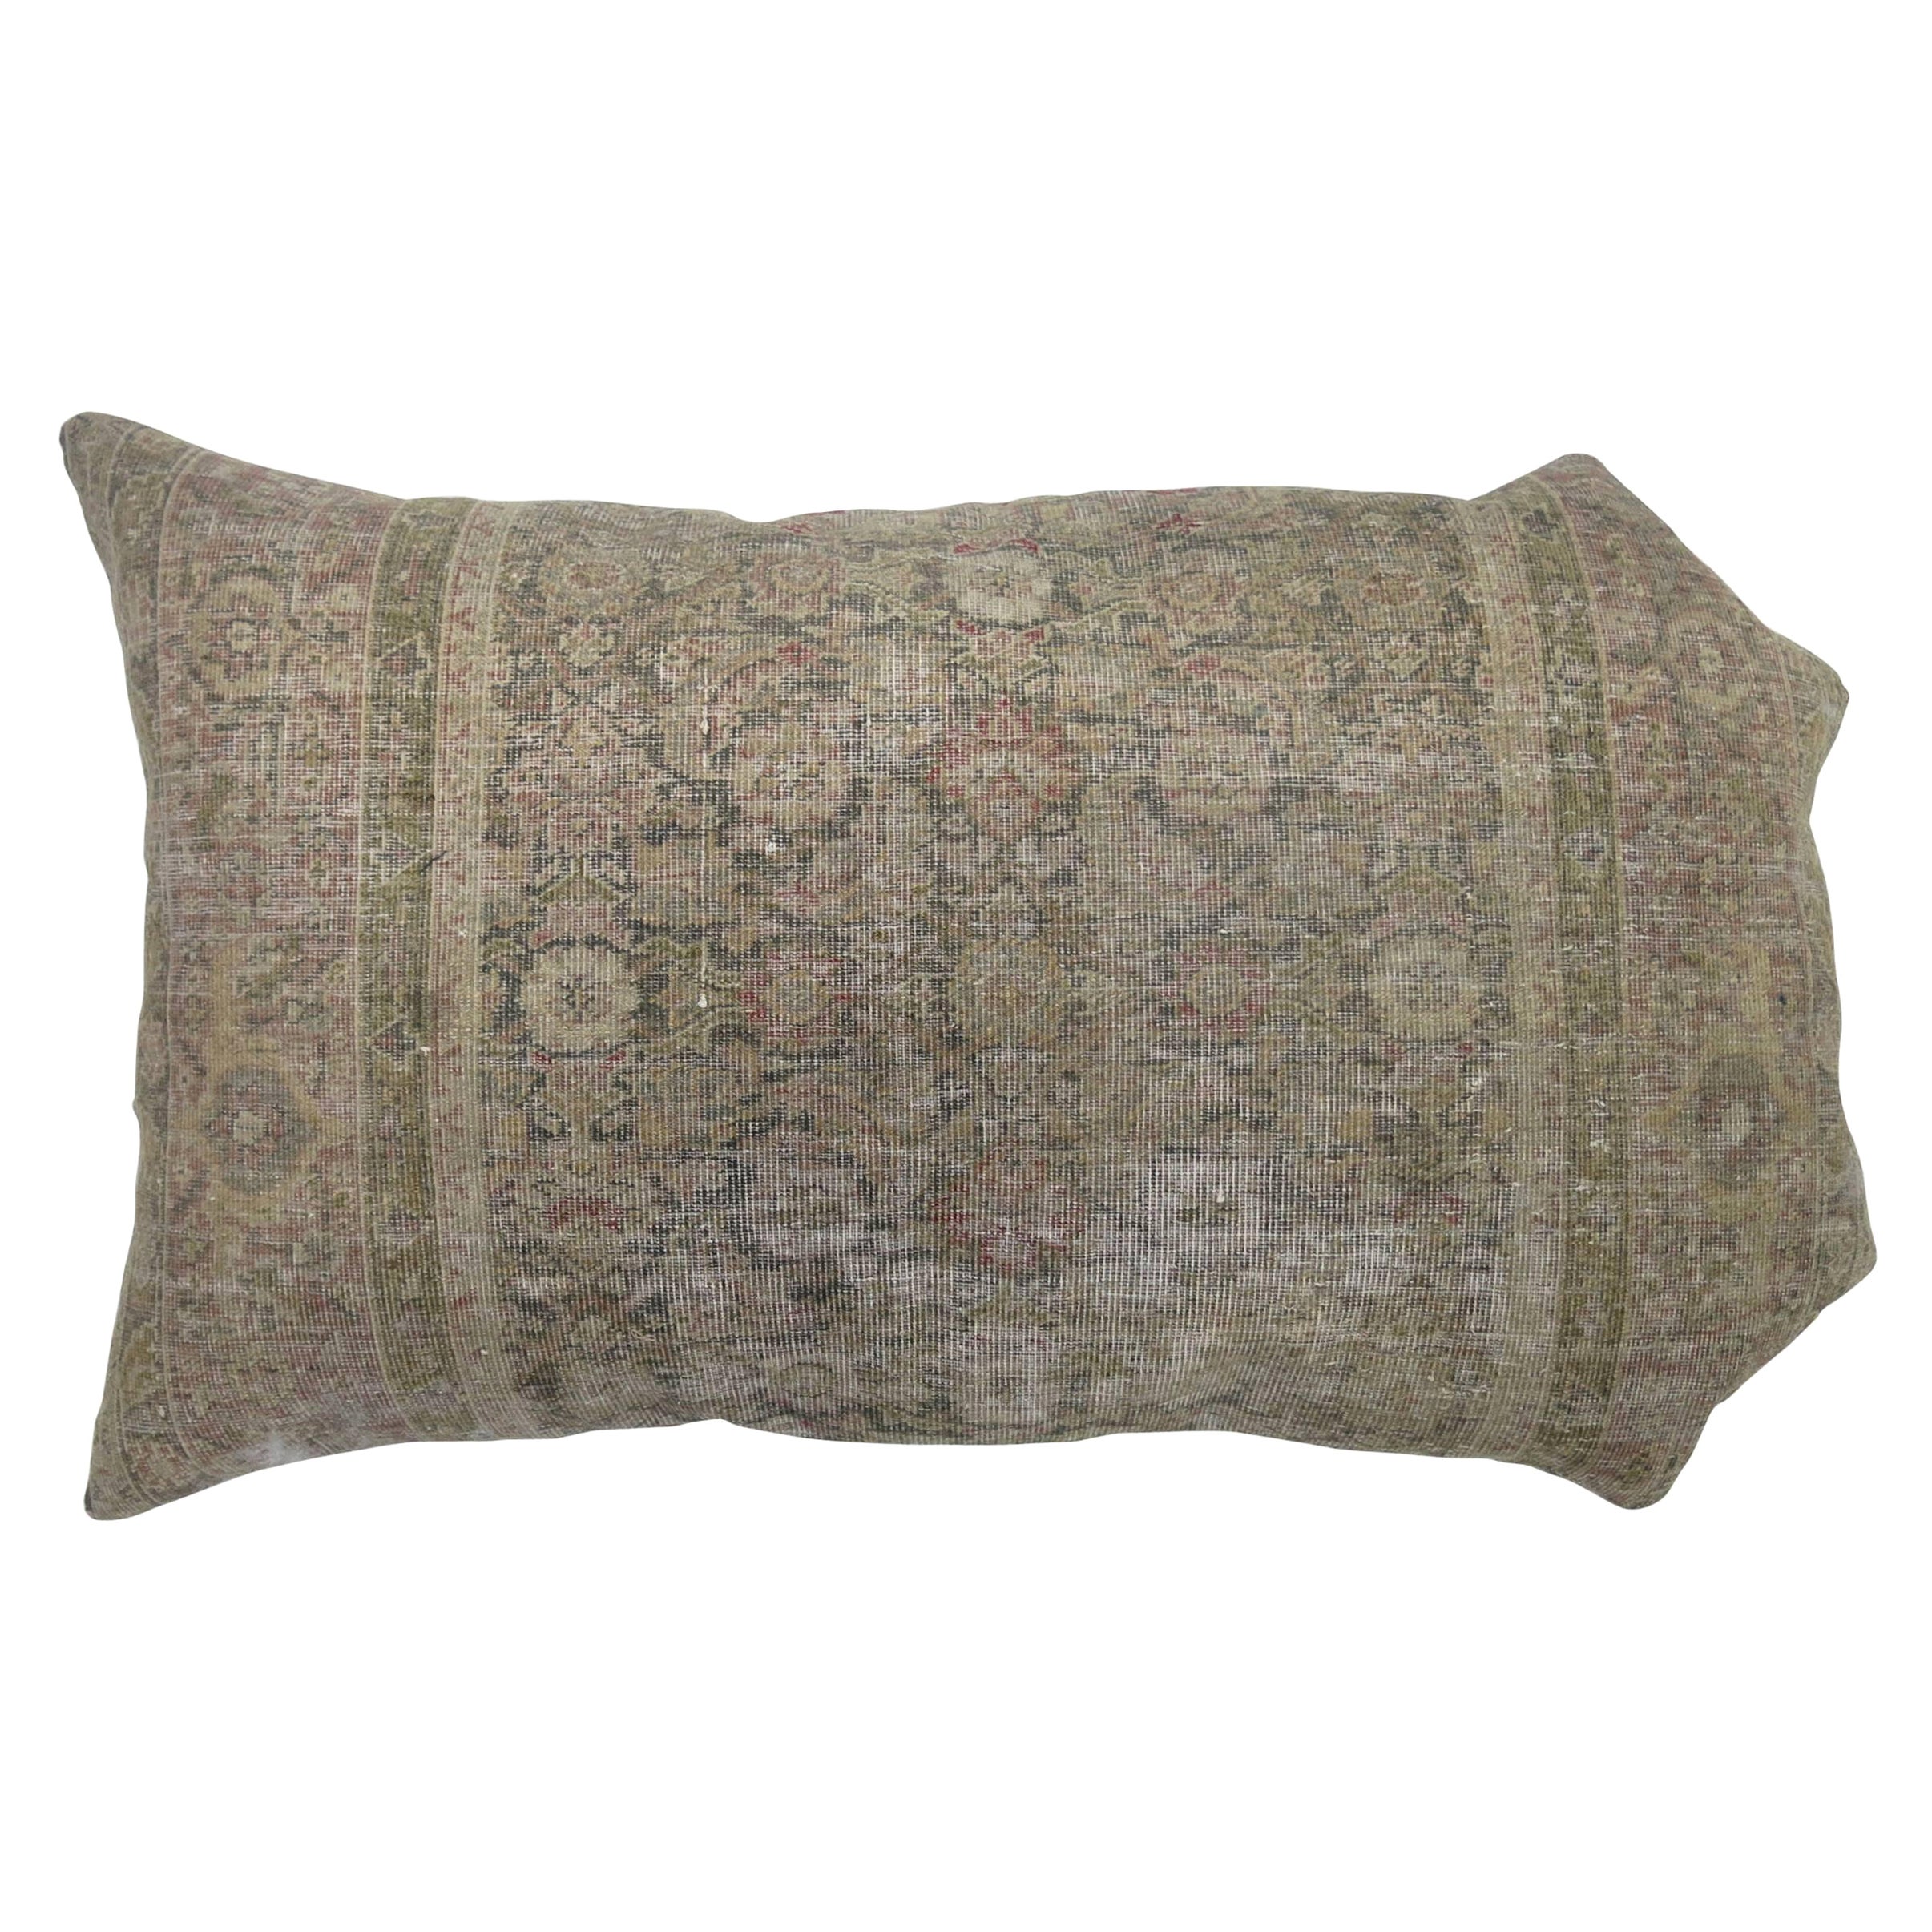 Coussin de tapis persan ancien Malayer de forme curviligne